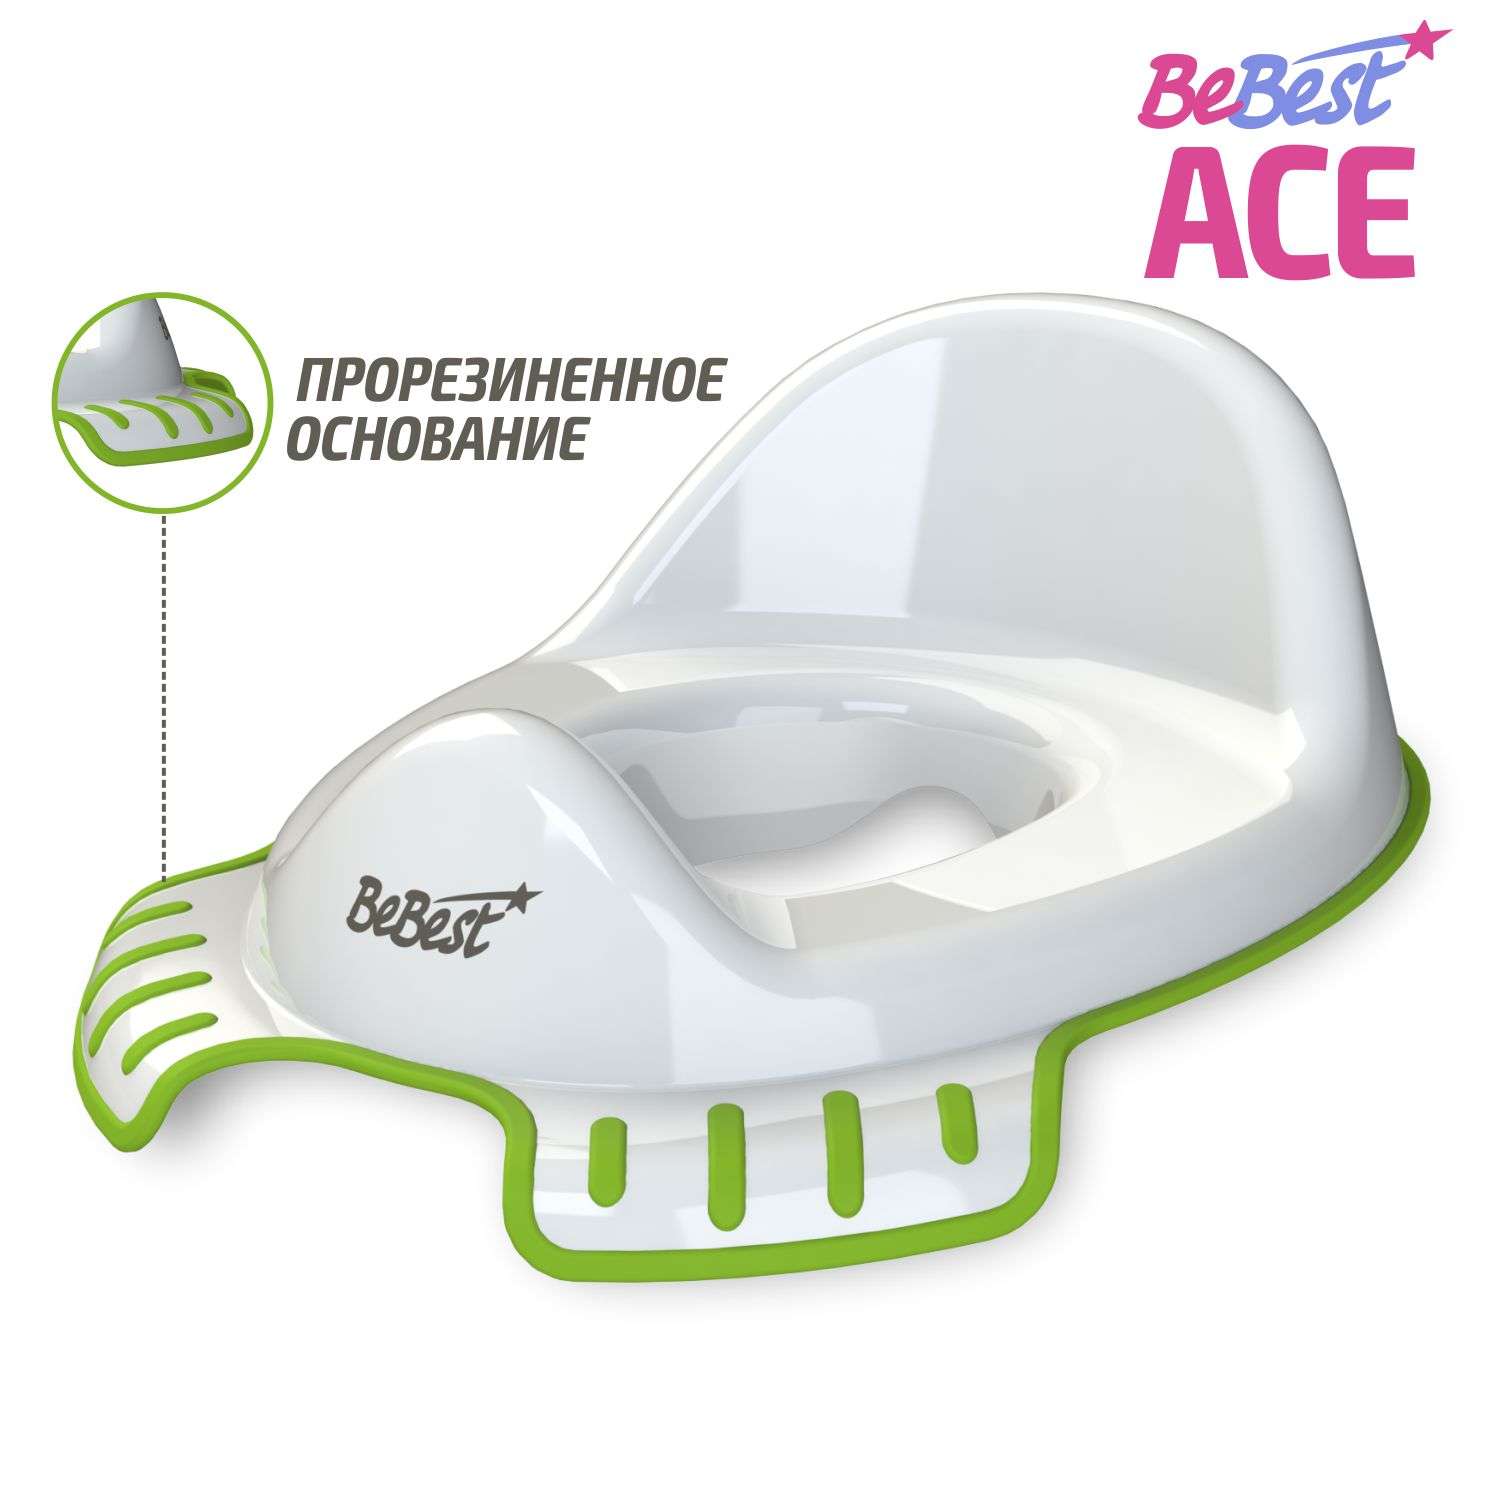 Накладка на унитаз детская BeBest Ace бело-зеленый - фото 1